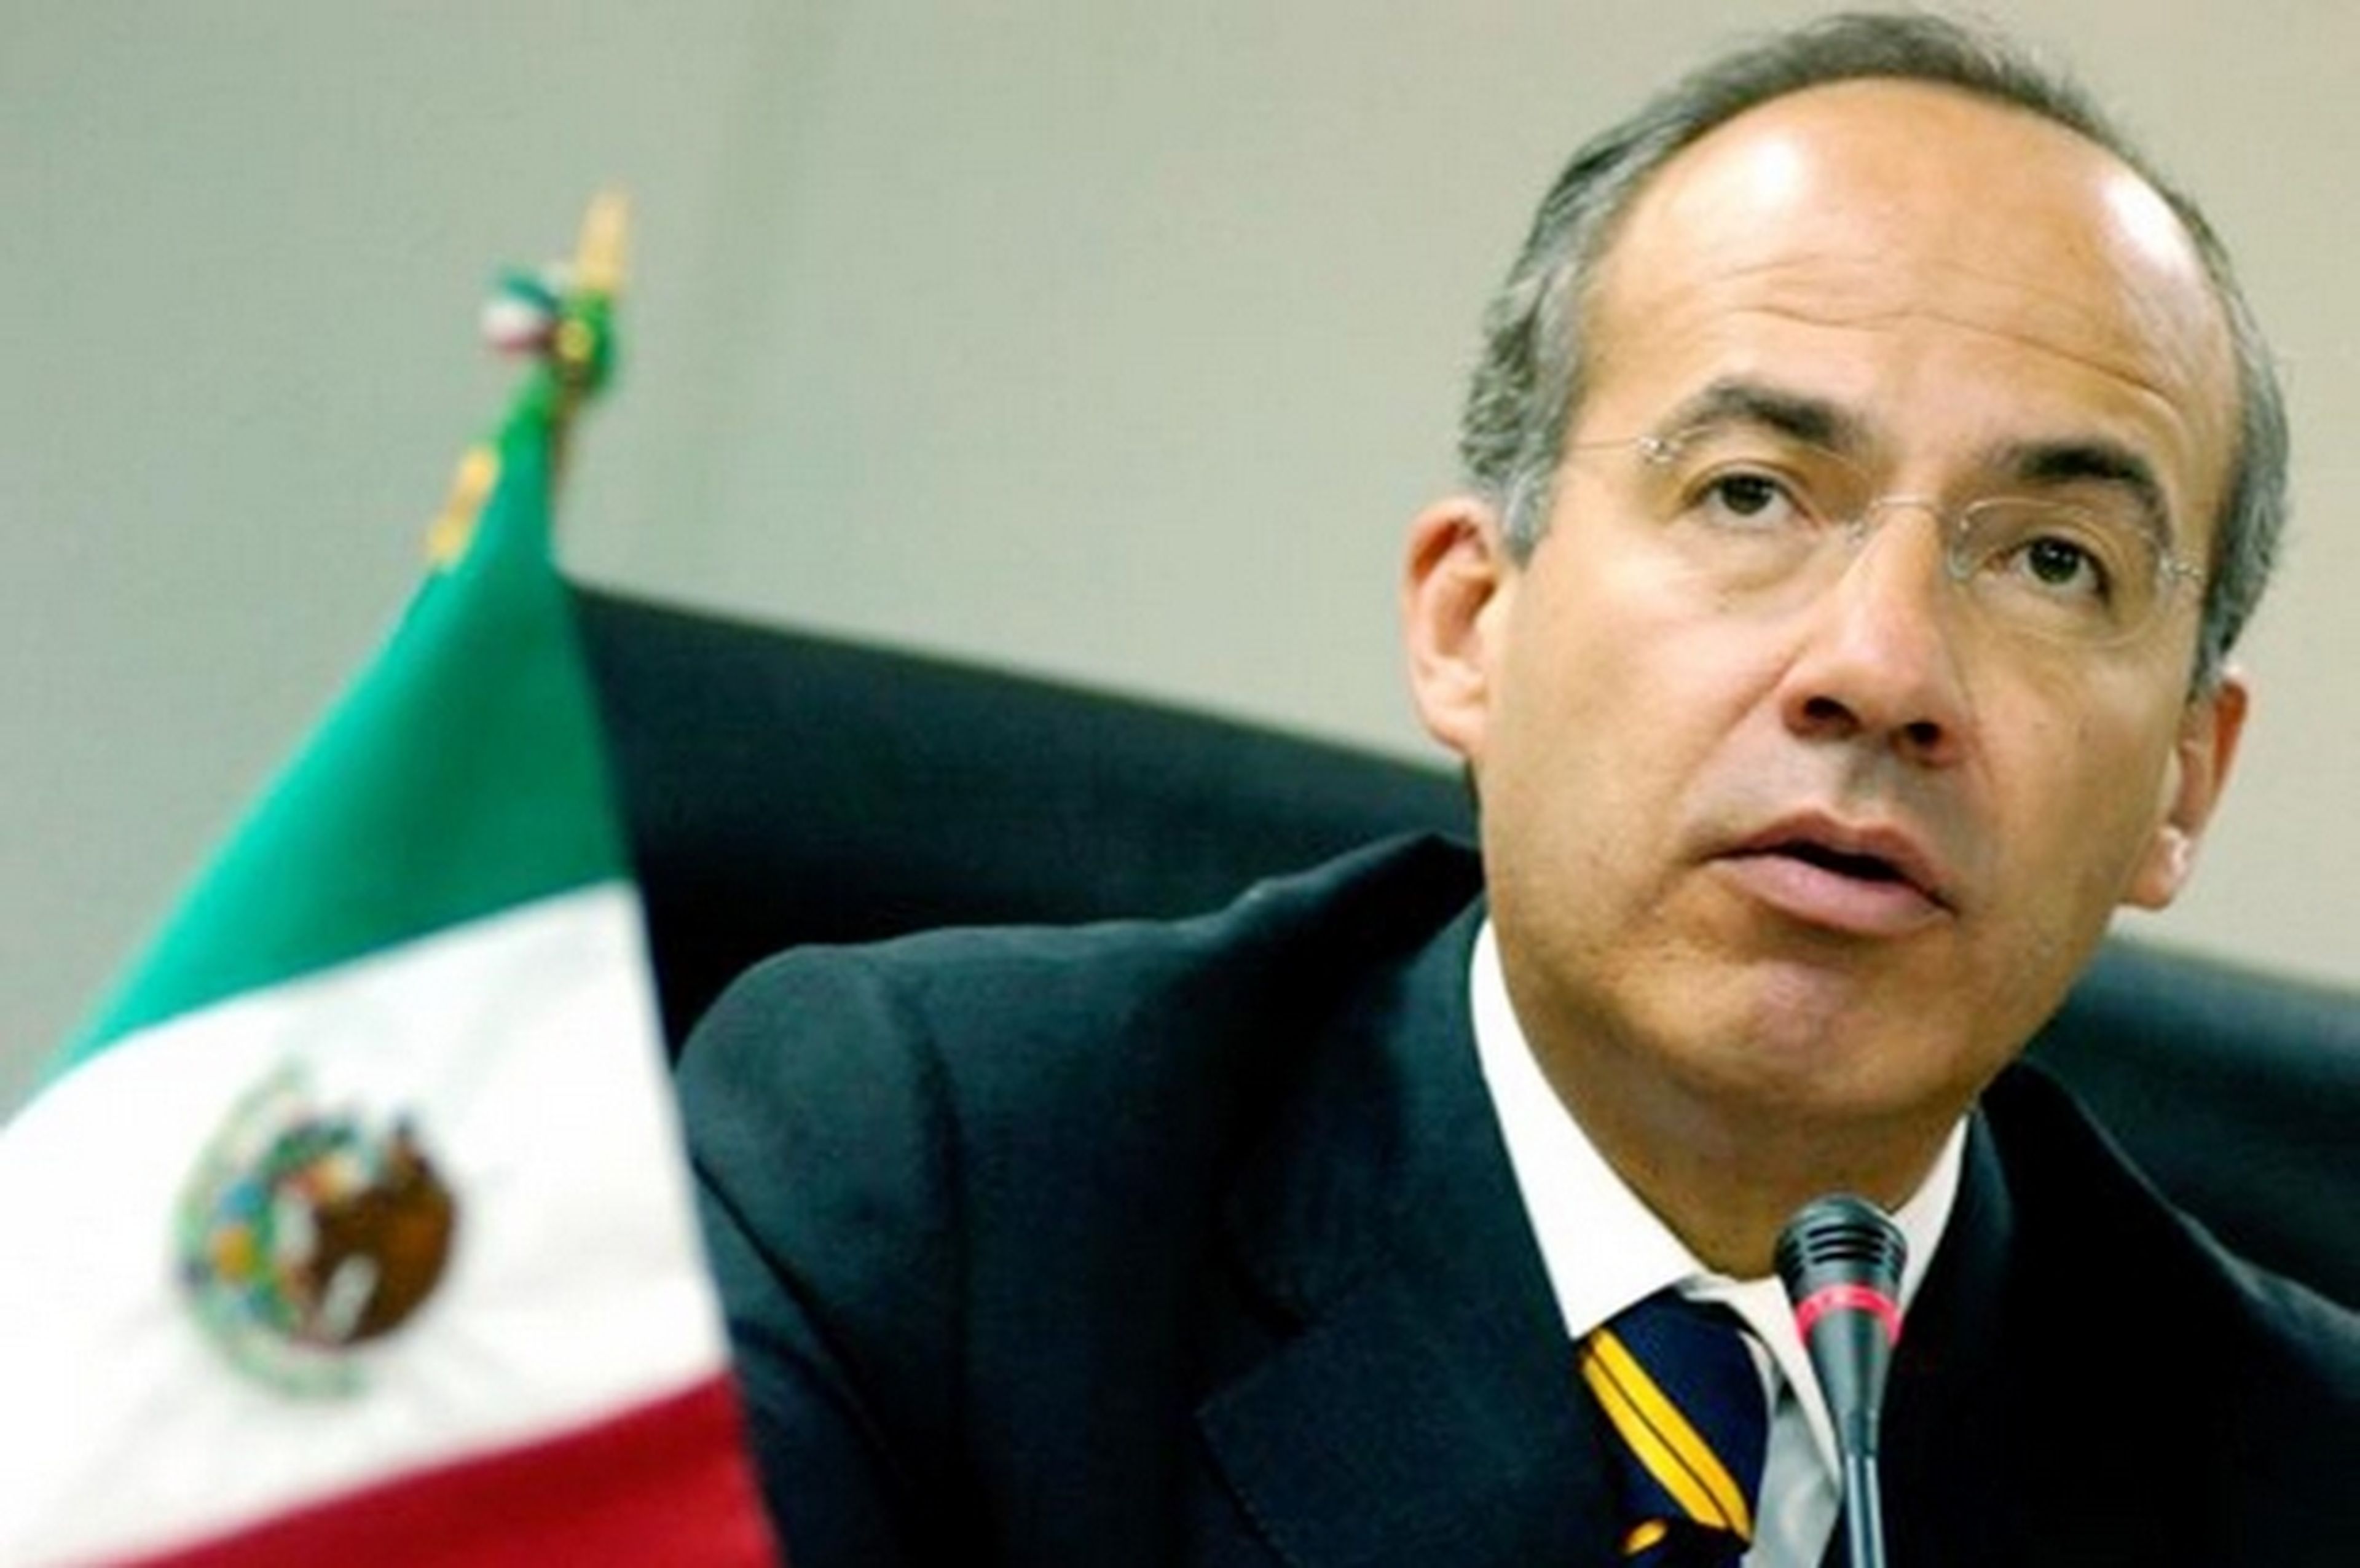 El ex-presidente de México, Felipe Calderón, supuestamente fue espiado por la NSA cuando estaba en el cargo